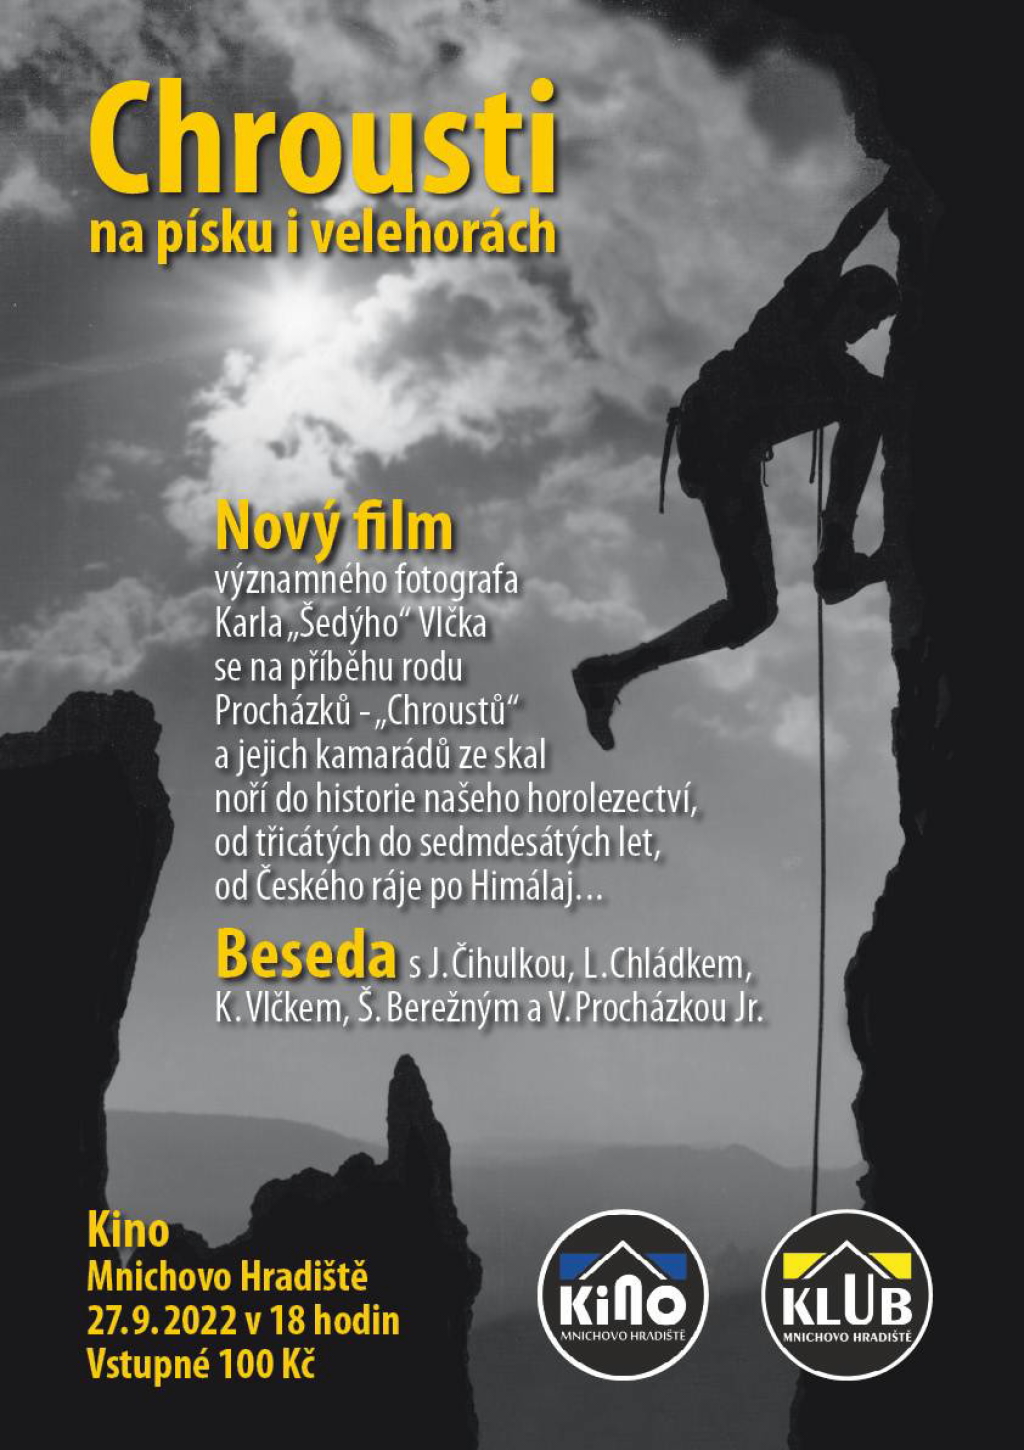 Zajímá vás historie českého horolezectví? Přijďte 27. září do hradišťského kina